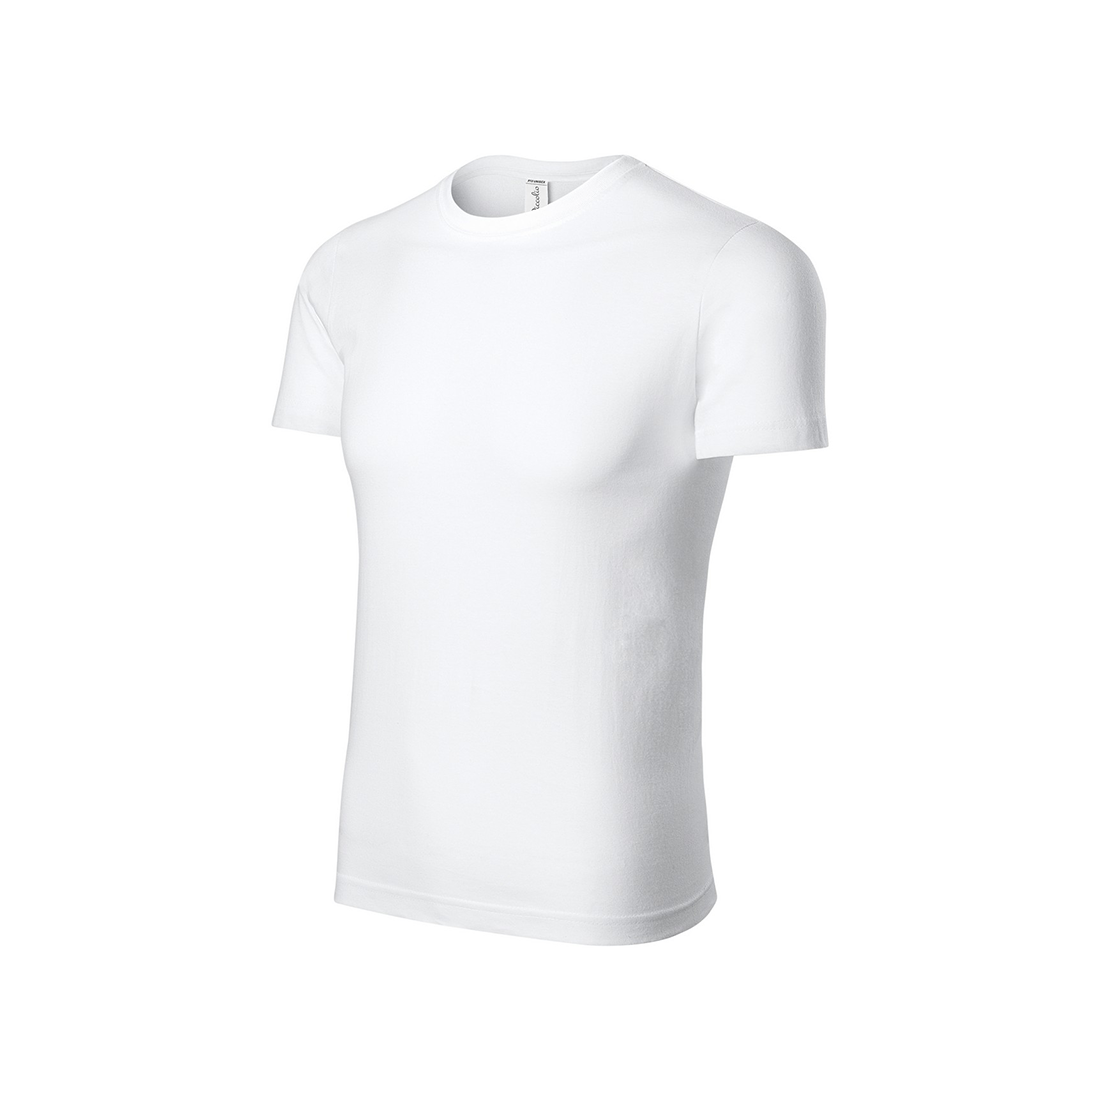 Camiseta de algodón para niños - Ropa de protección